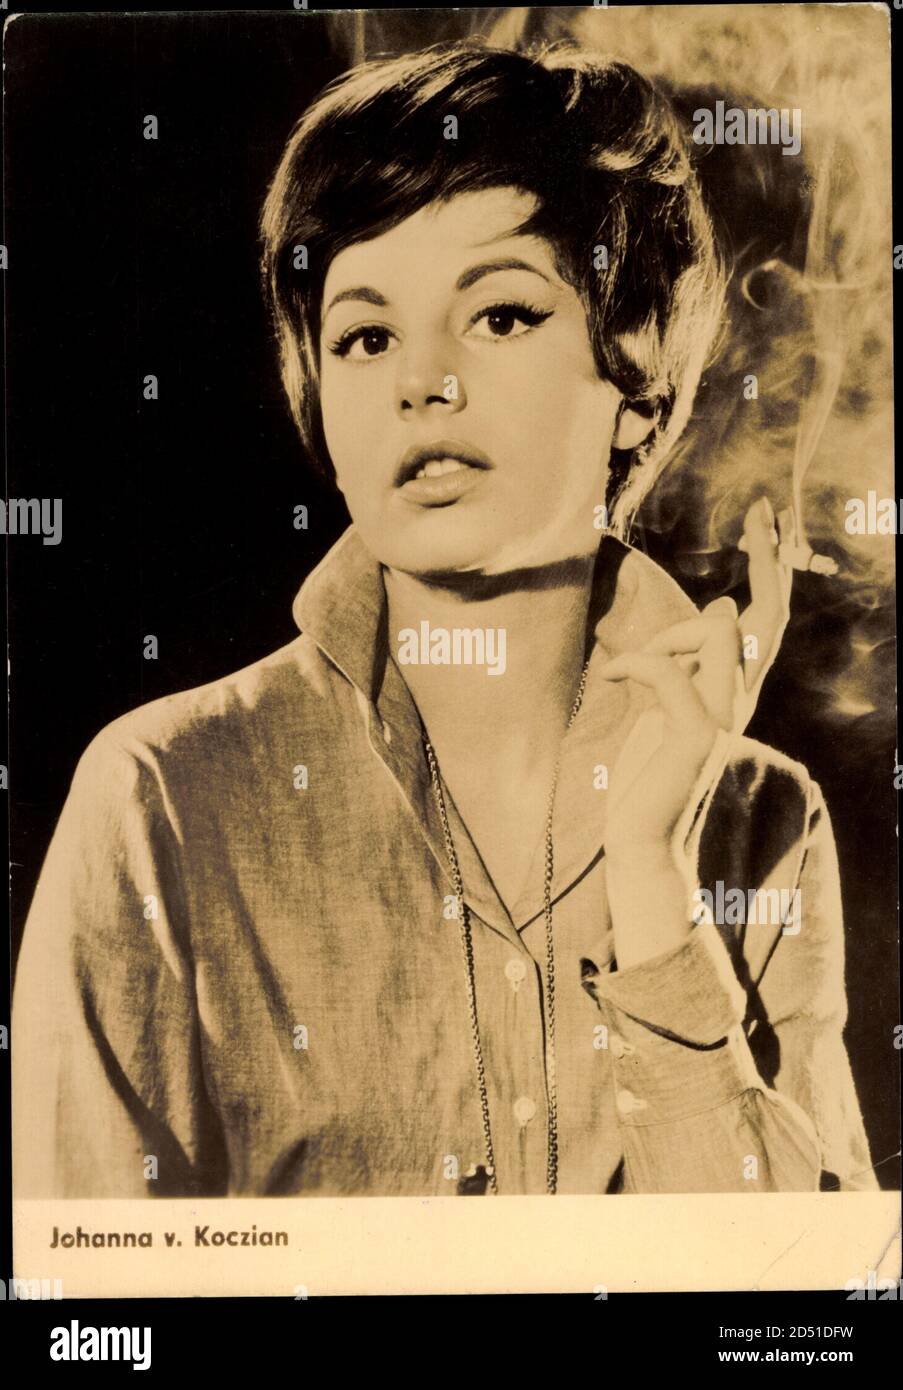 Schauspielerin Johanna v. Koczian, Zigarette,rauchen | usage worldwide Stock Photo